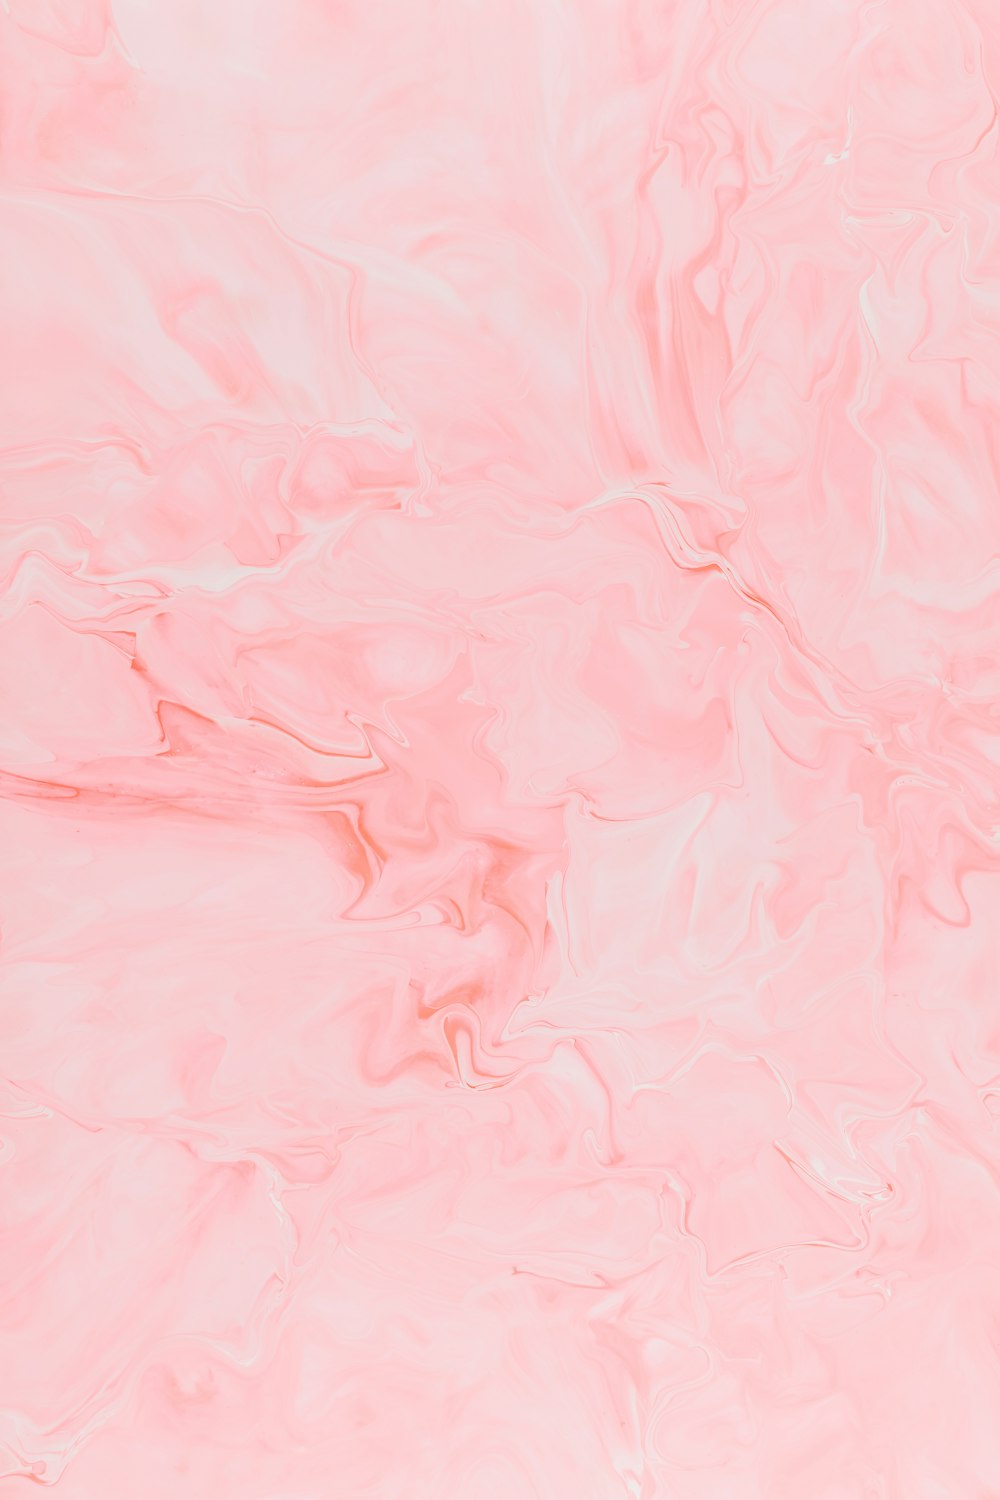 pintura abstracta rosa y blanca